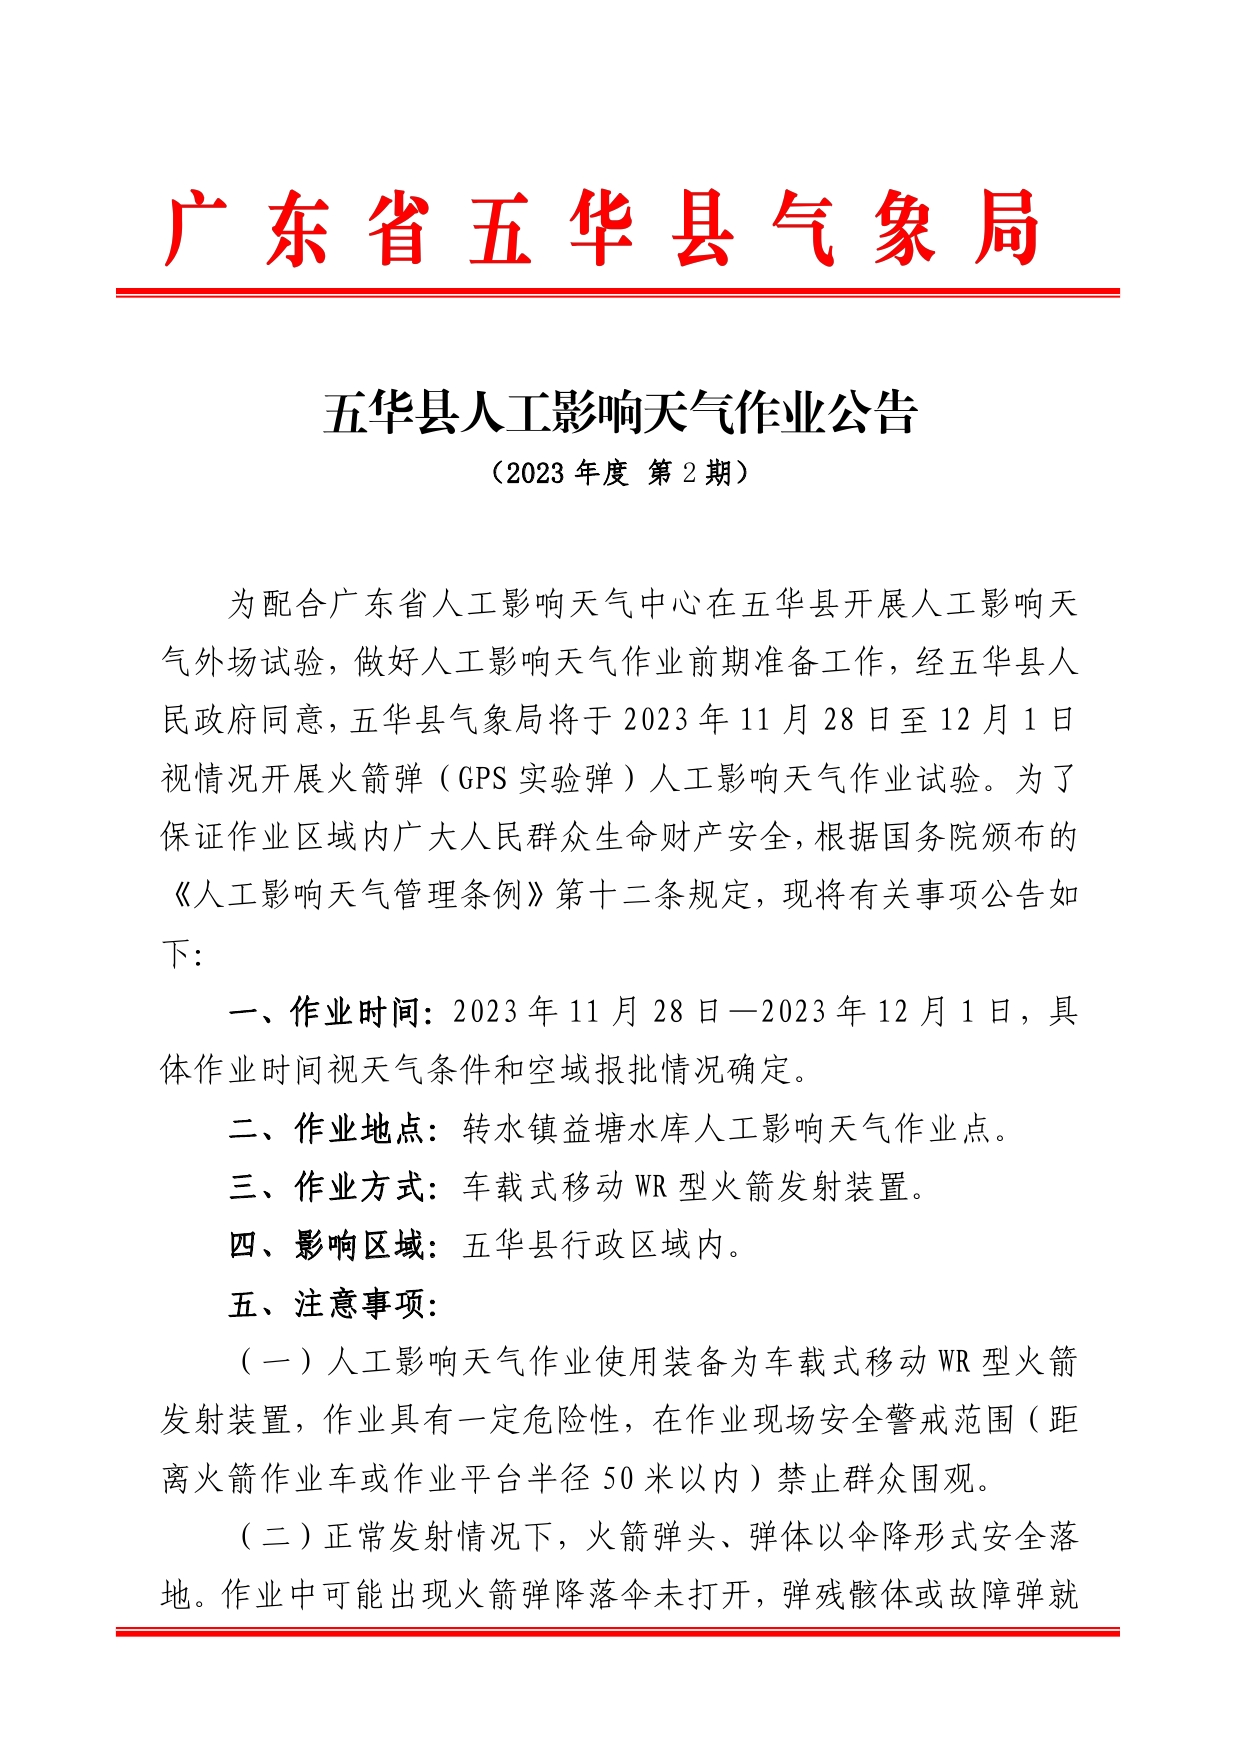 五华县人工影响天气作业公告2023 第2期0000.jpg